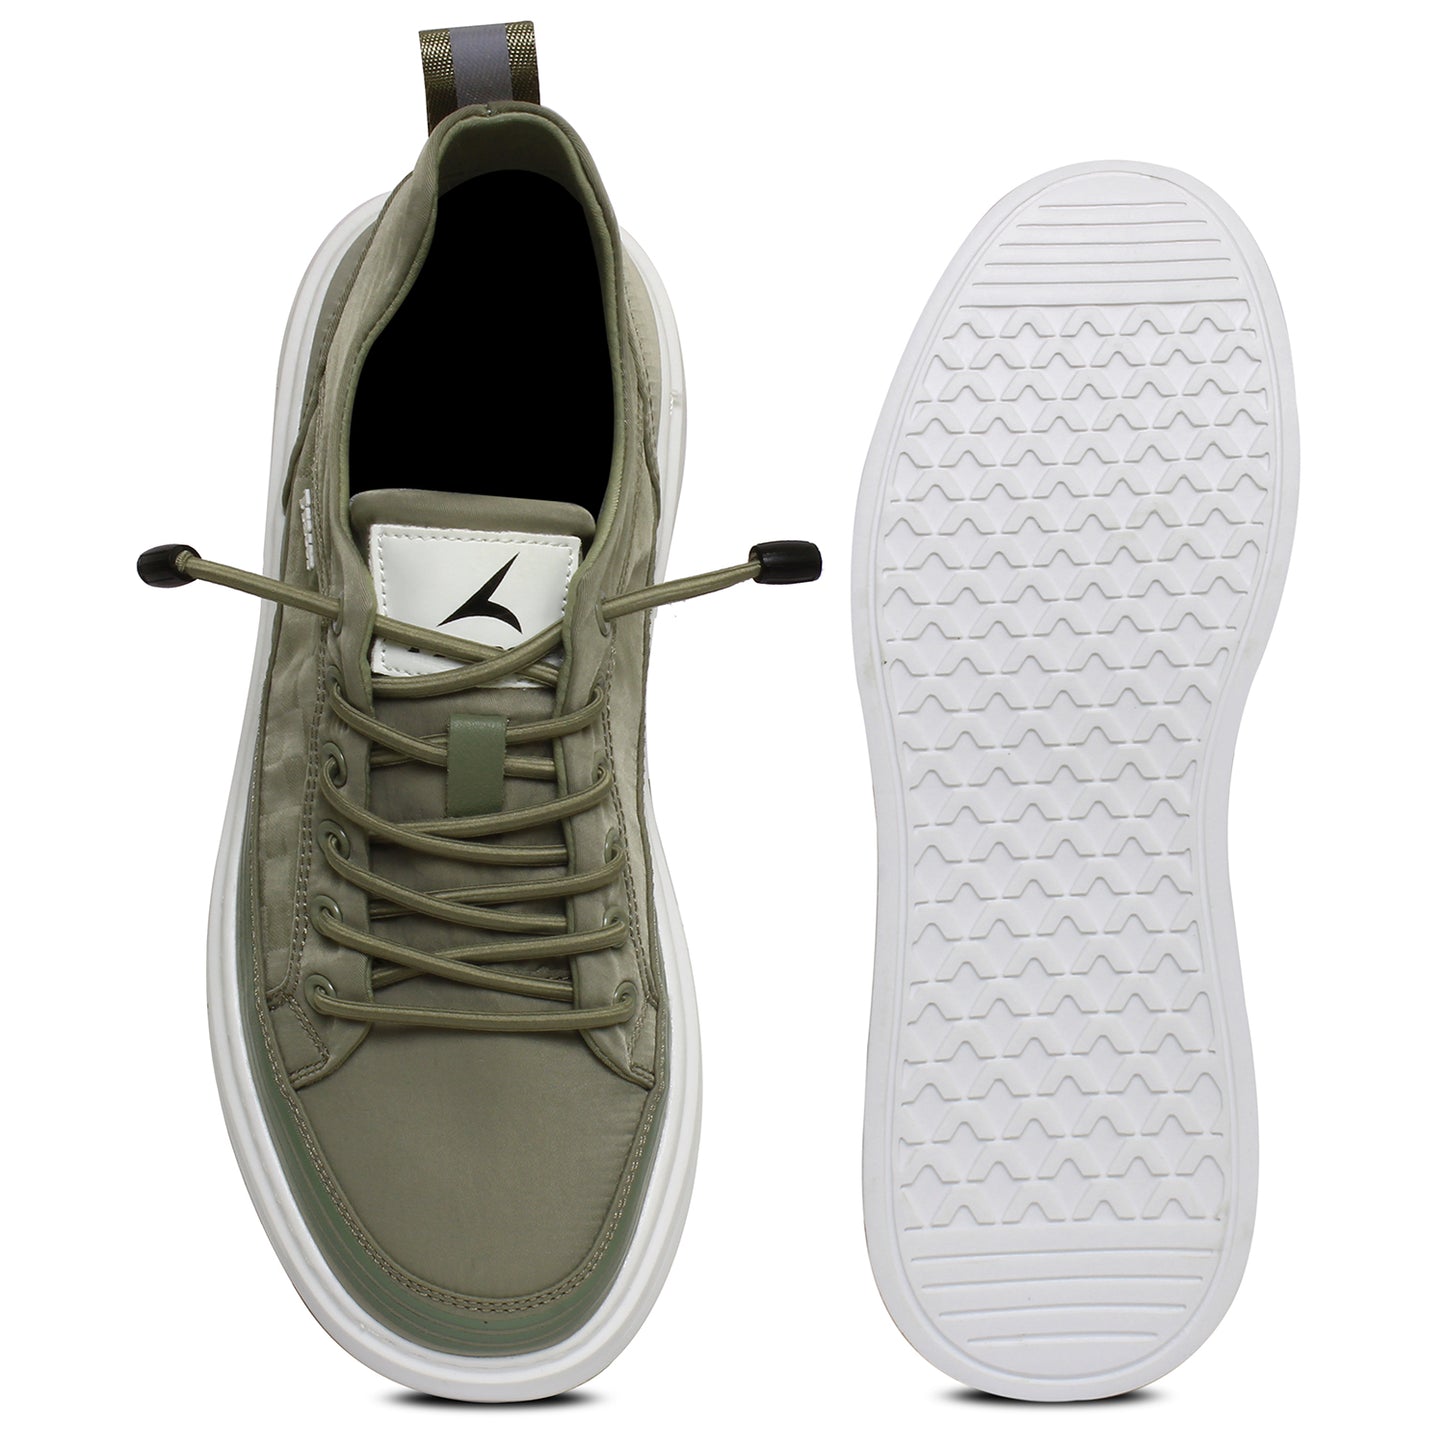 Tracer Scoosh 2714 Sneaker for Men's Green